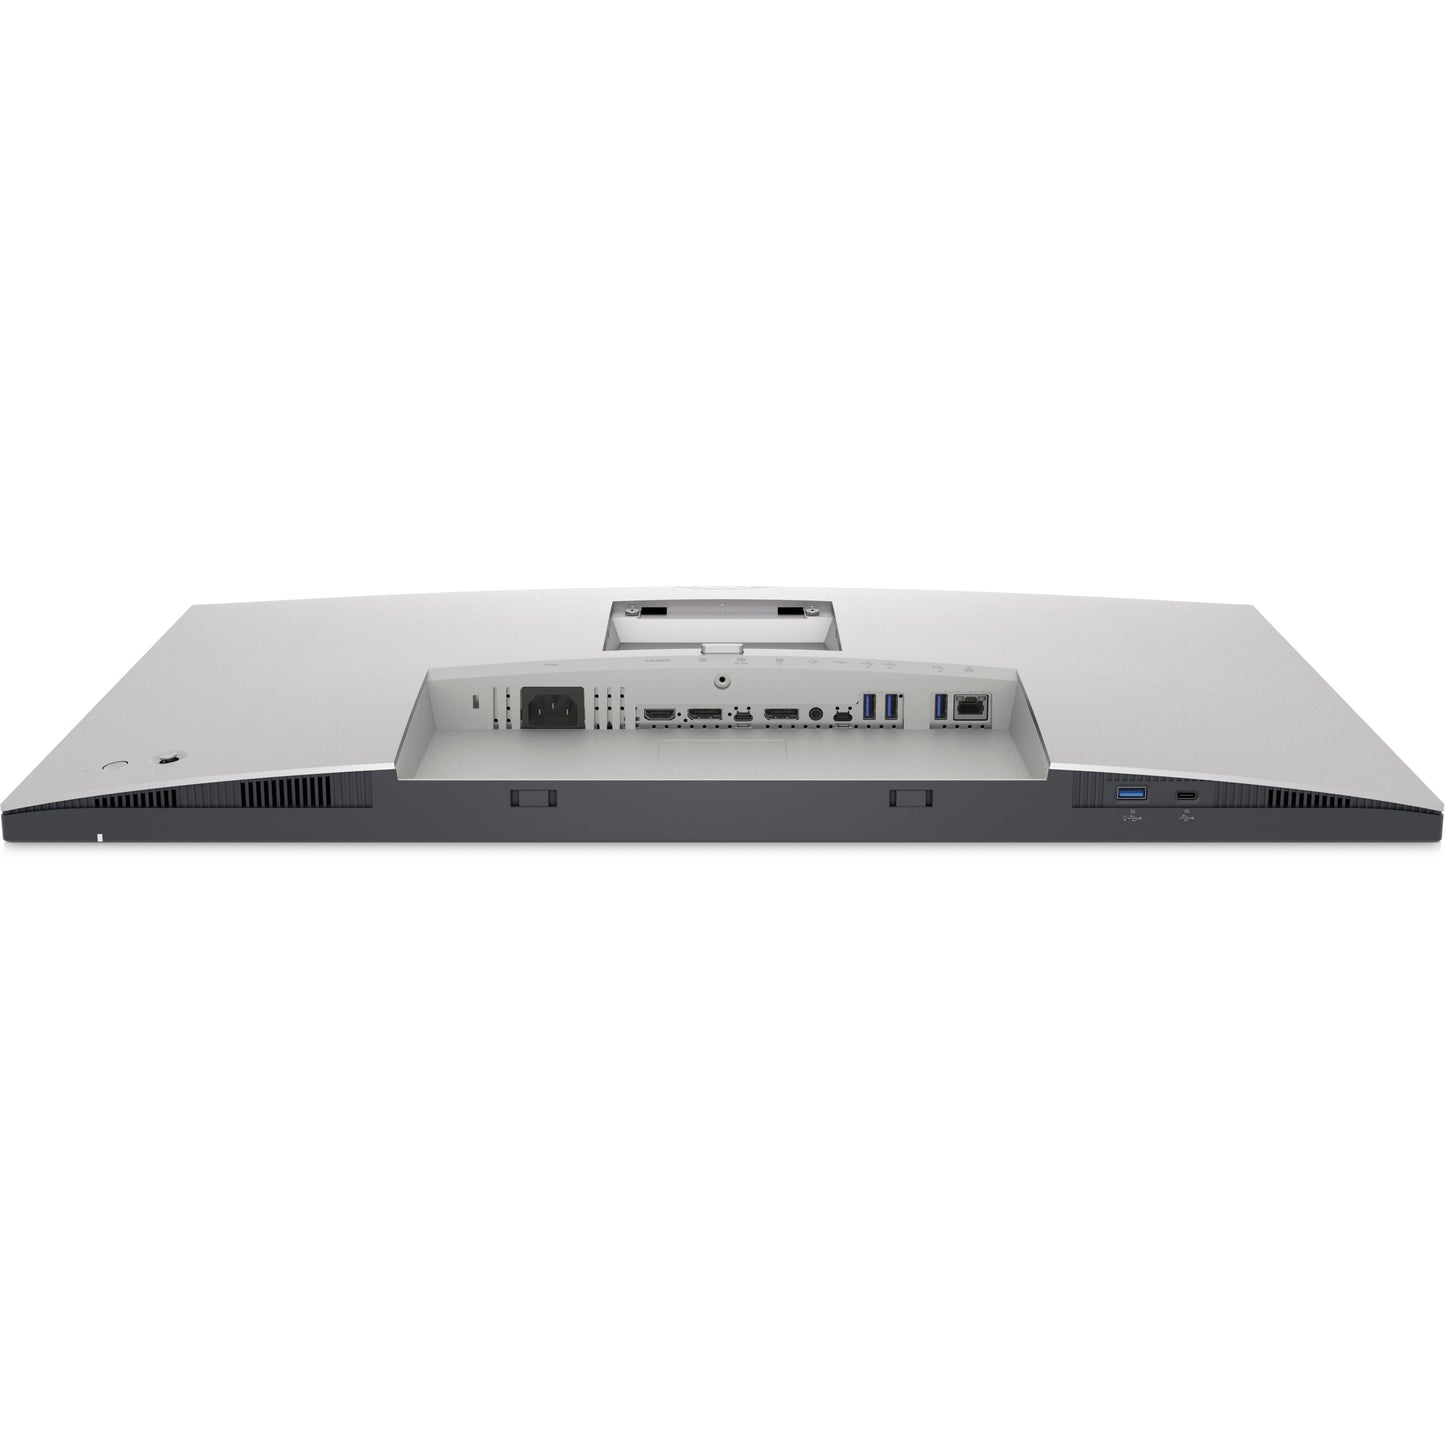 Dell UltraSharp U3023E 30" WQXGA LCD Monitor - 16:10 - Black Silver